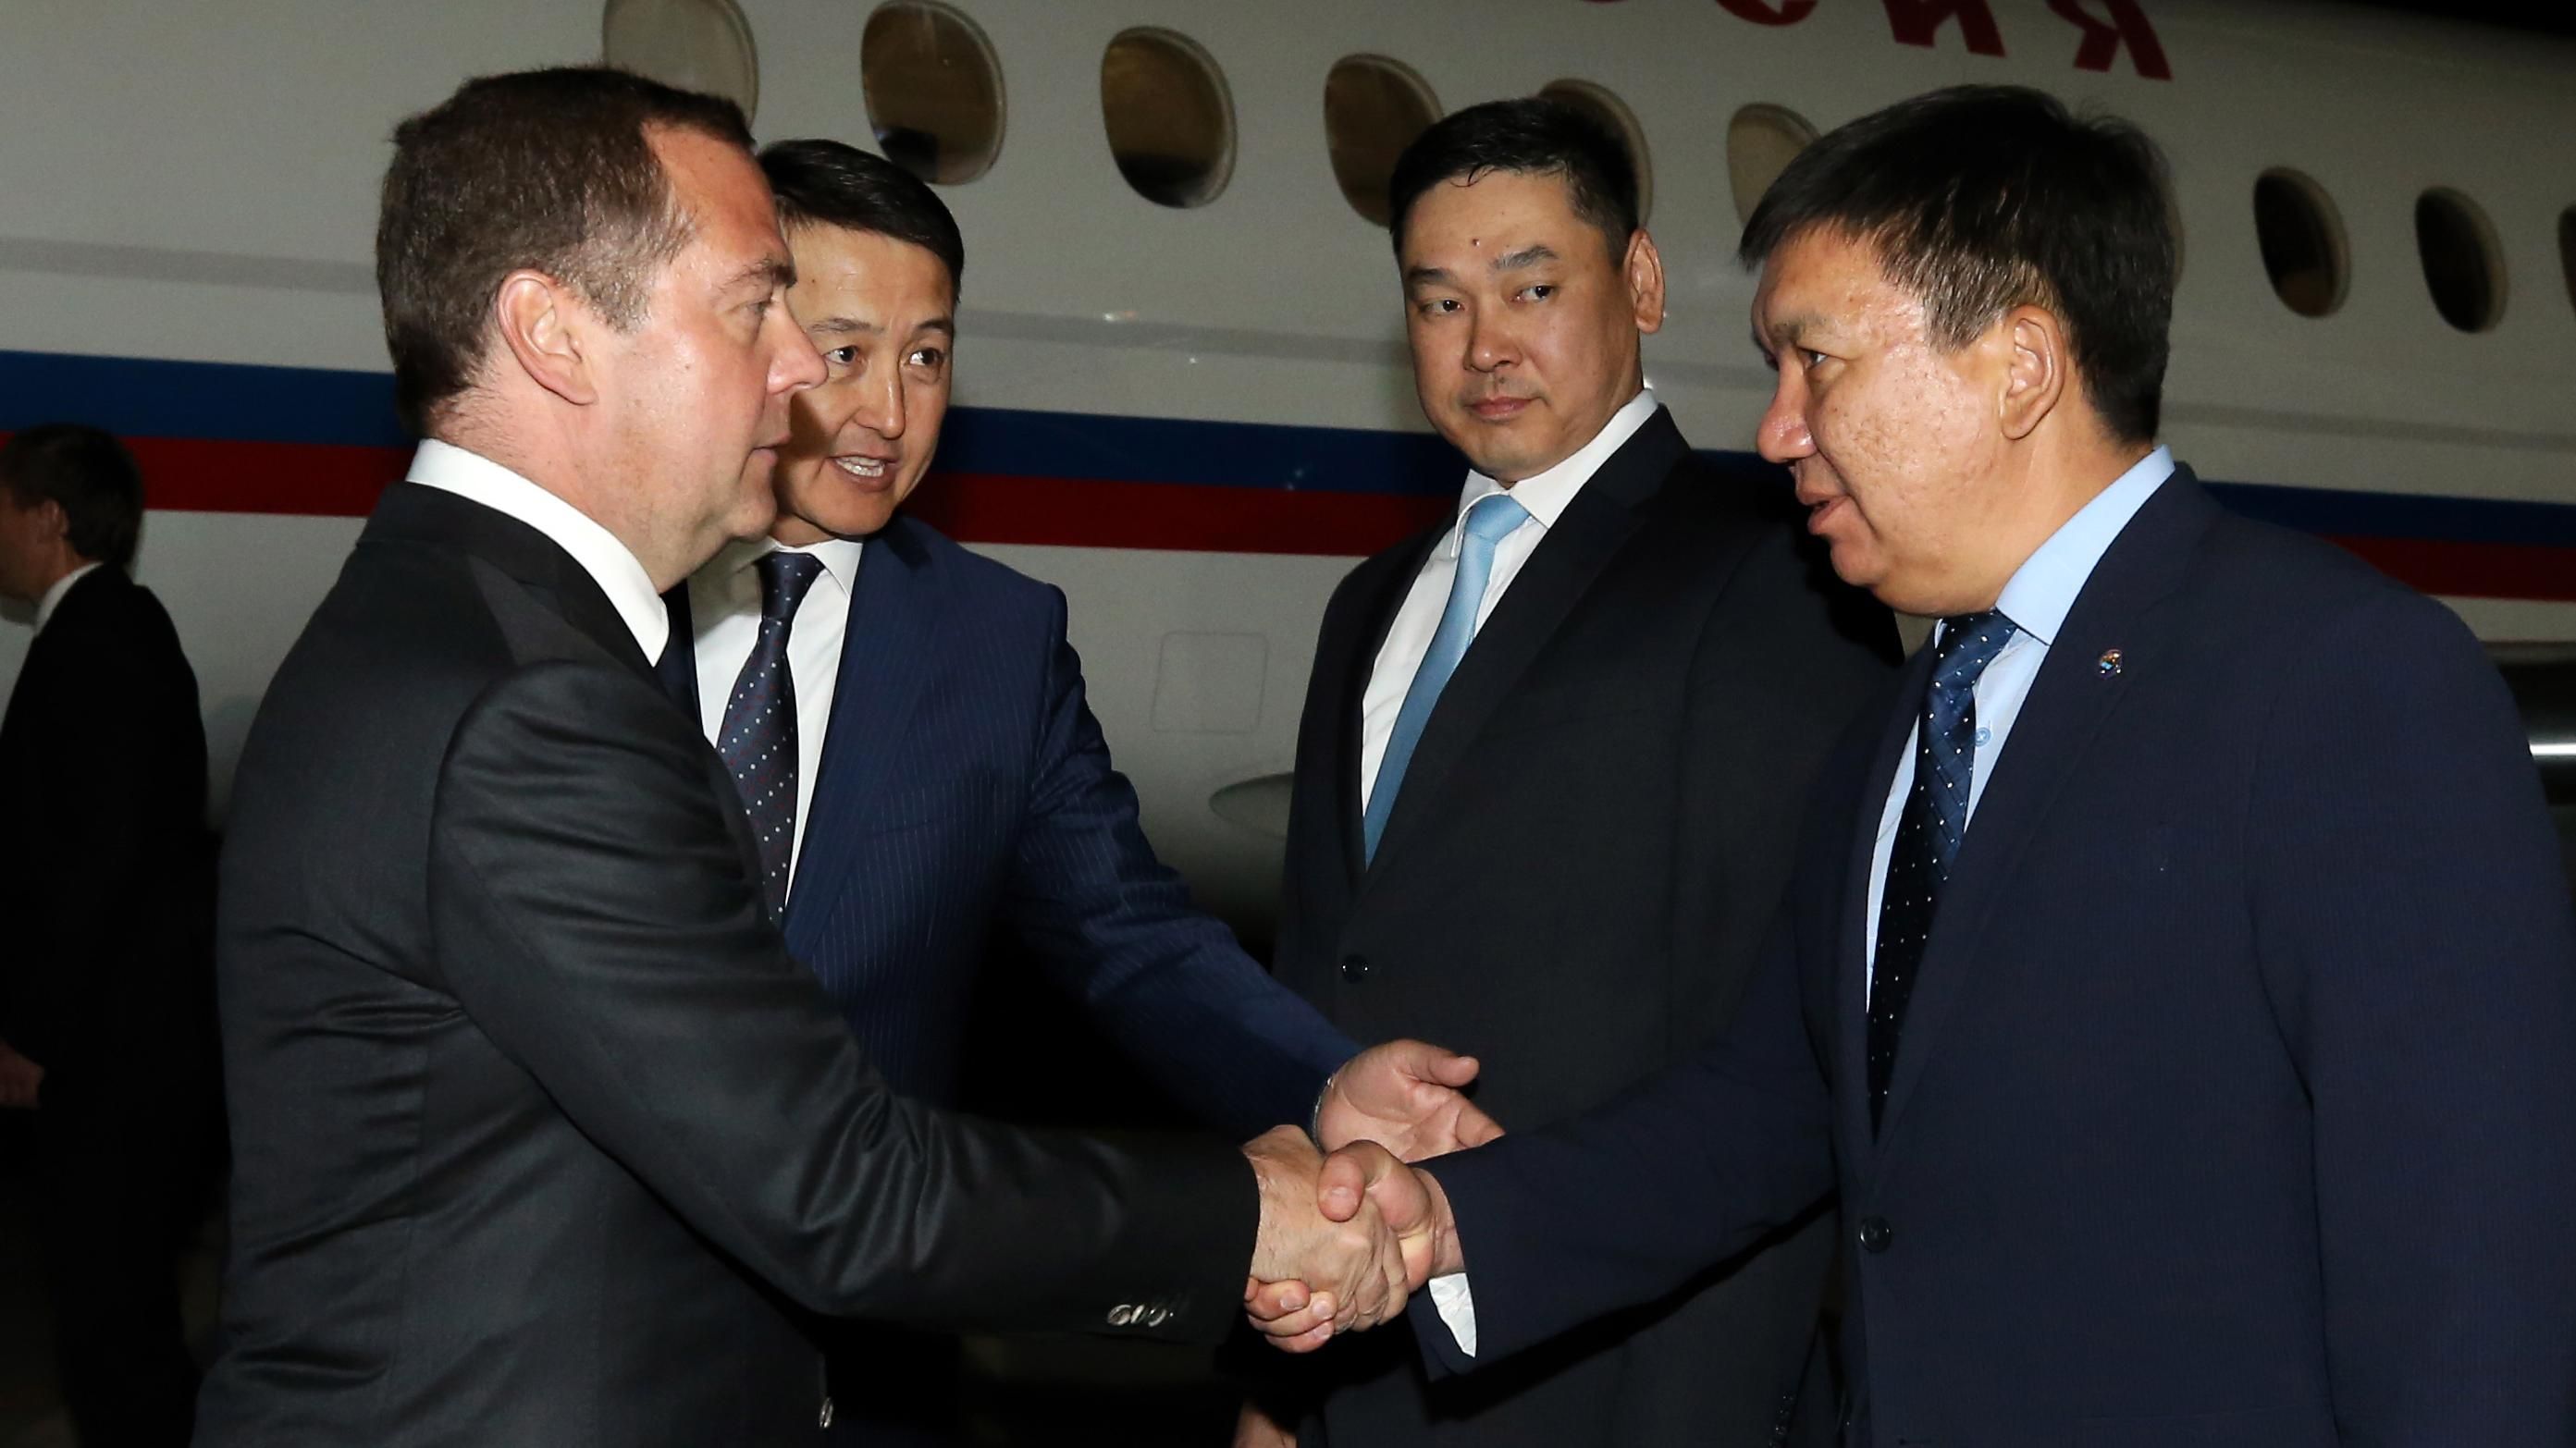 Медведев прилетел в Кыргызстан на фоне столкновений и задержания экс-президента Атамбаева